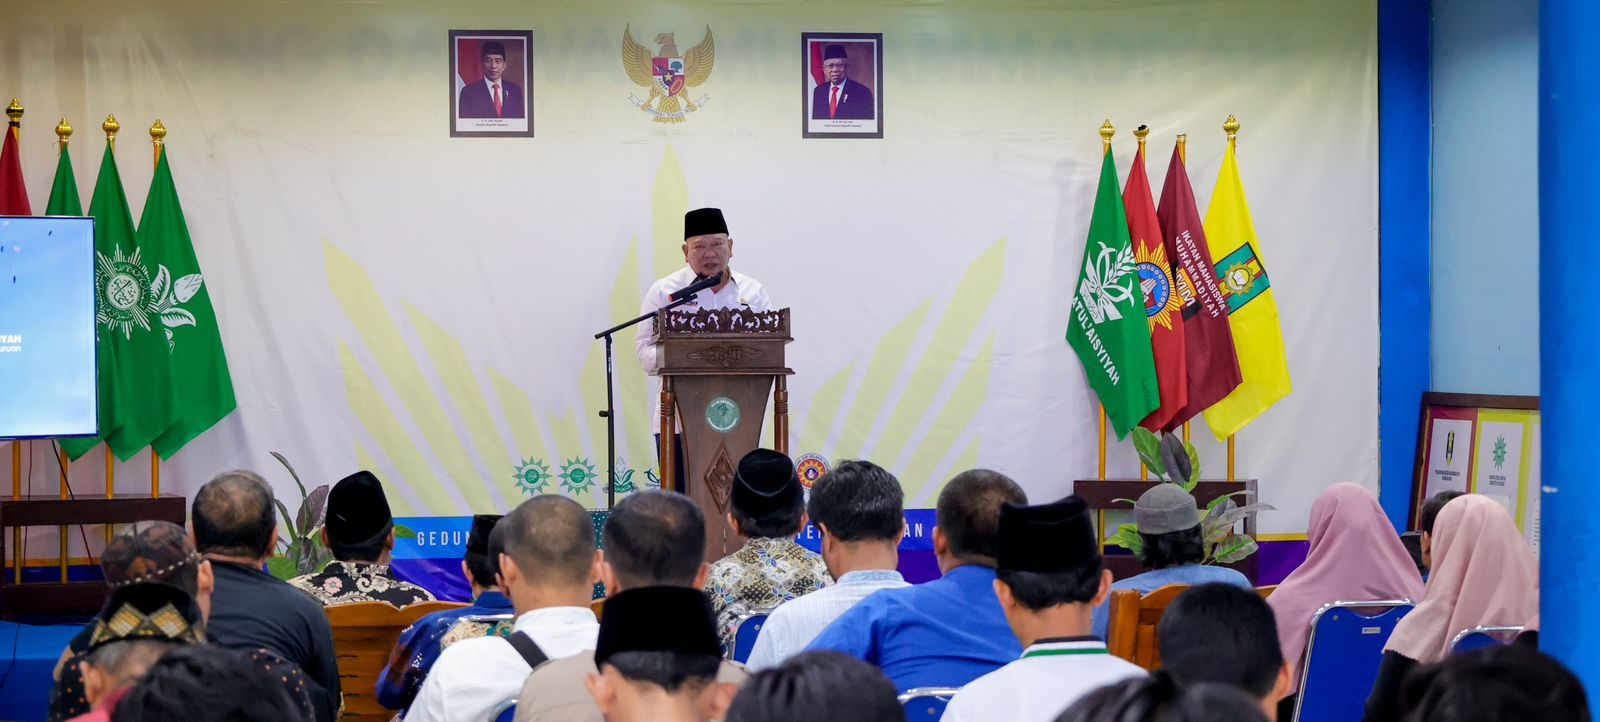 Di Depan Pengurus Muhammadiyah, Ketua DPD RI Uraikan Sistem Bernegara Asli Indonesia